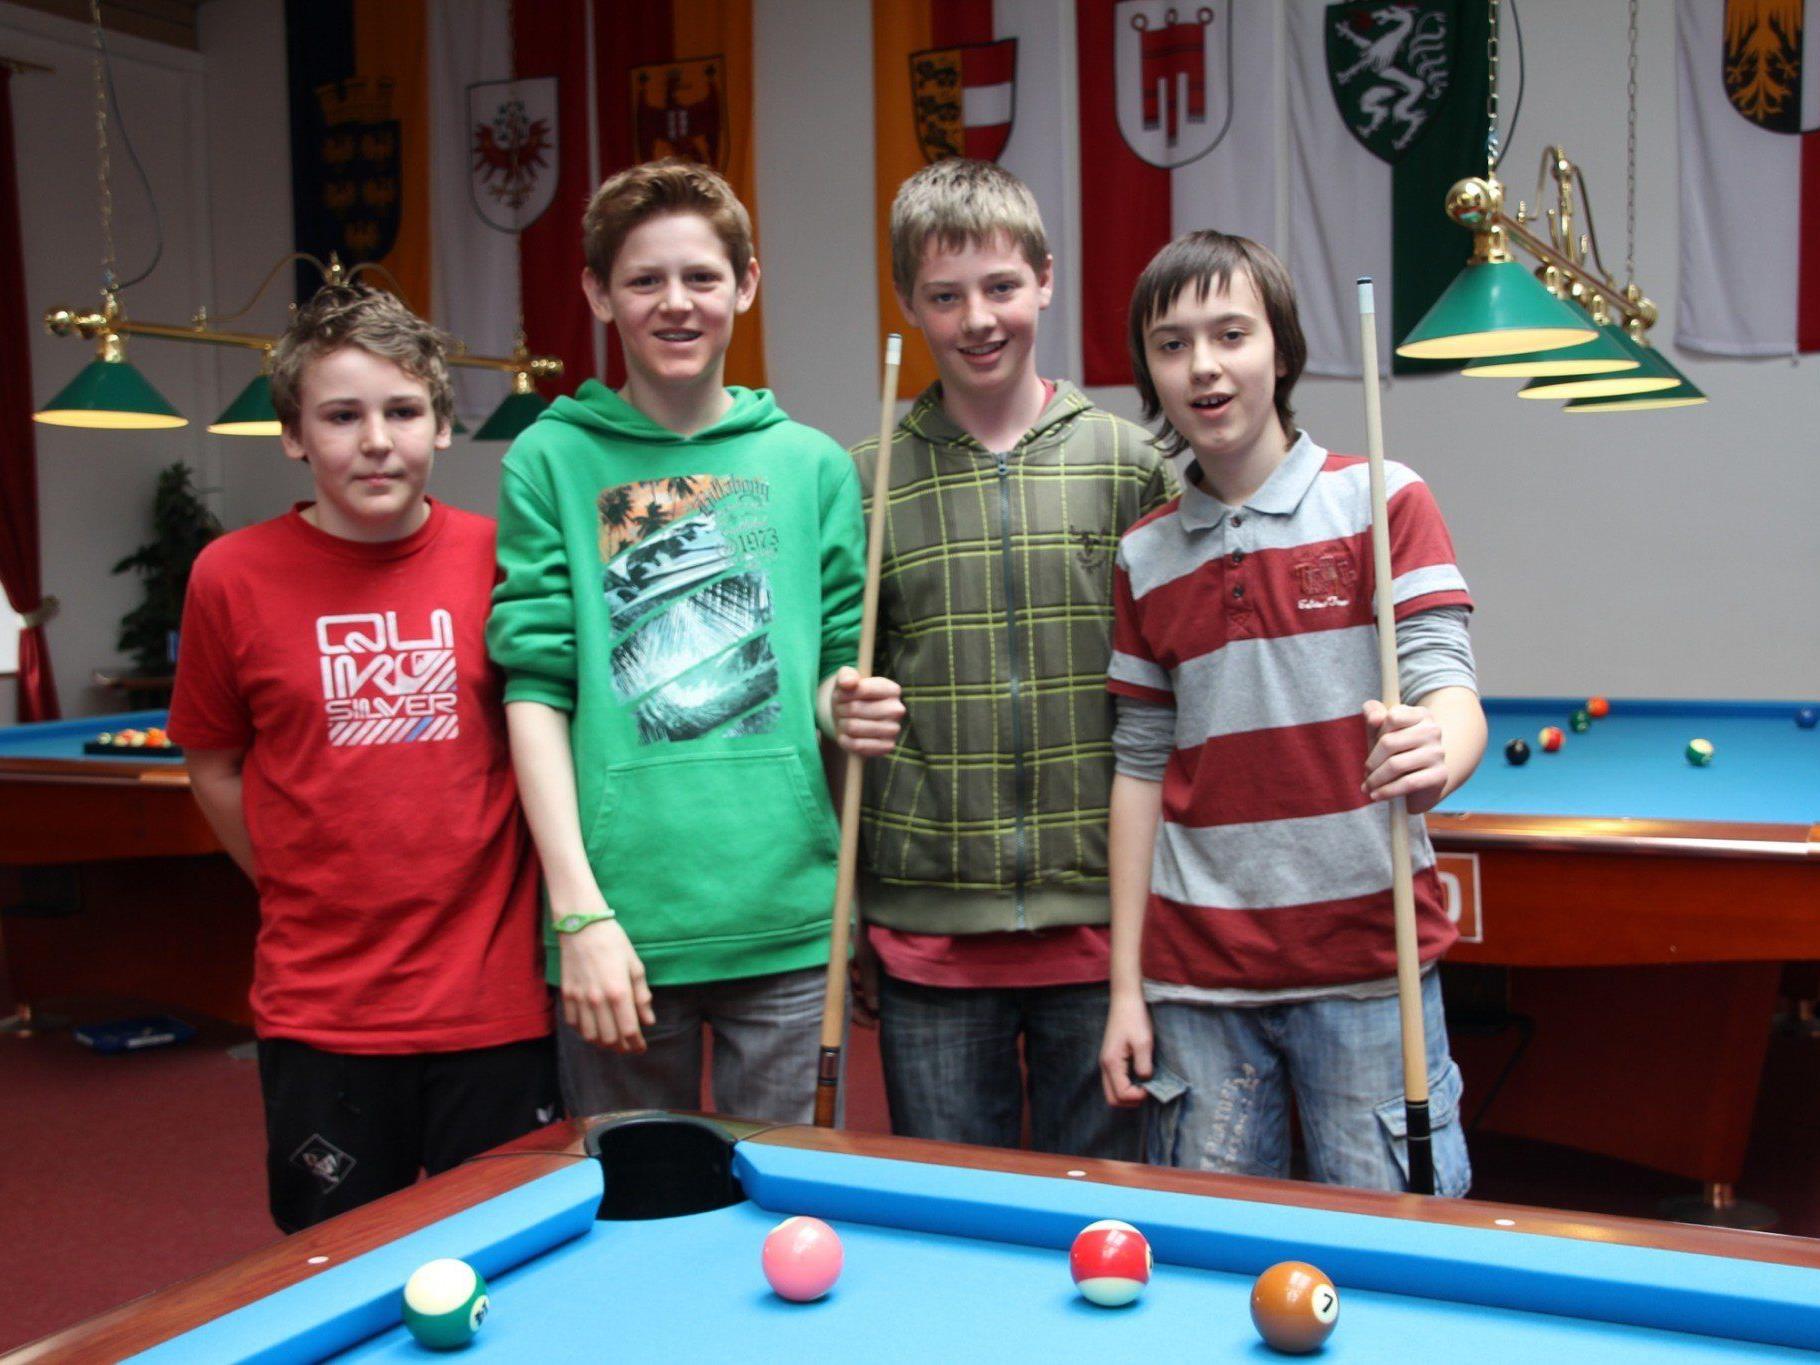 Philipp, Dominik, Clemens und Maximilian spielten gegen einander